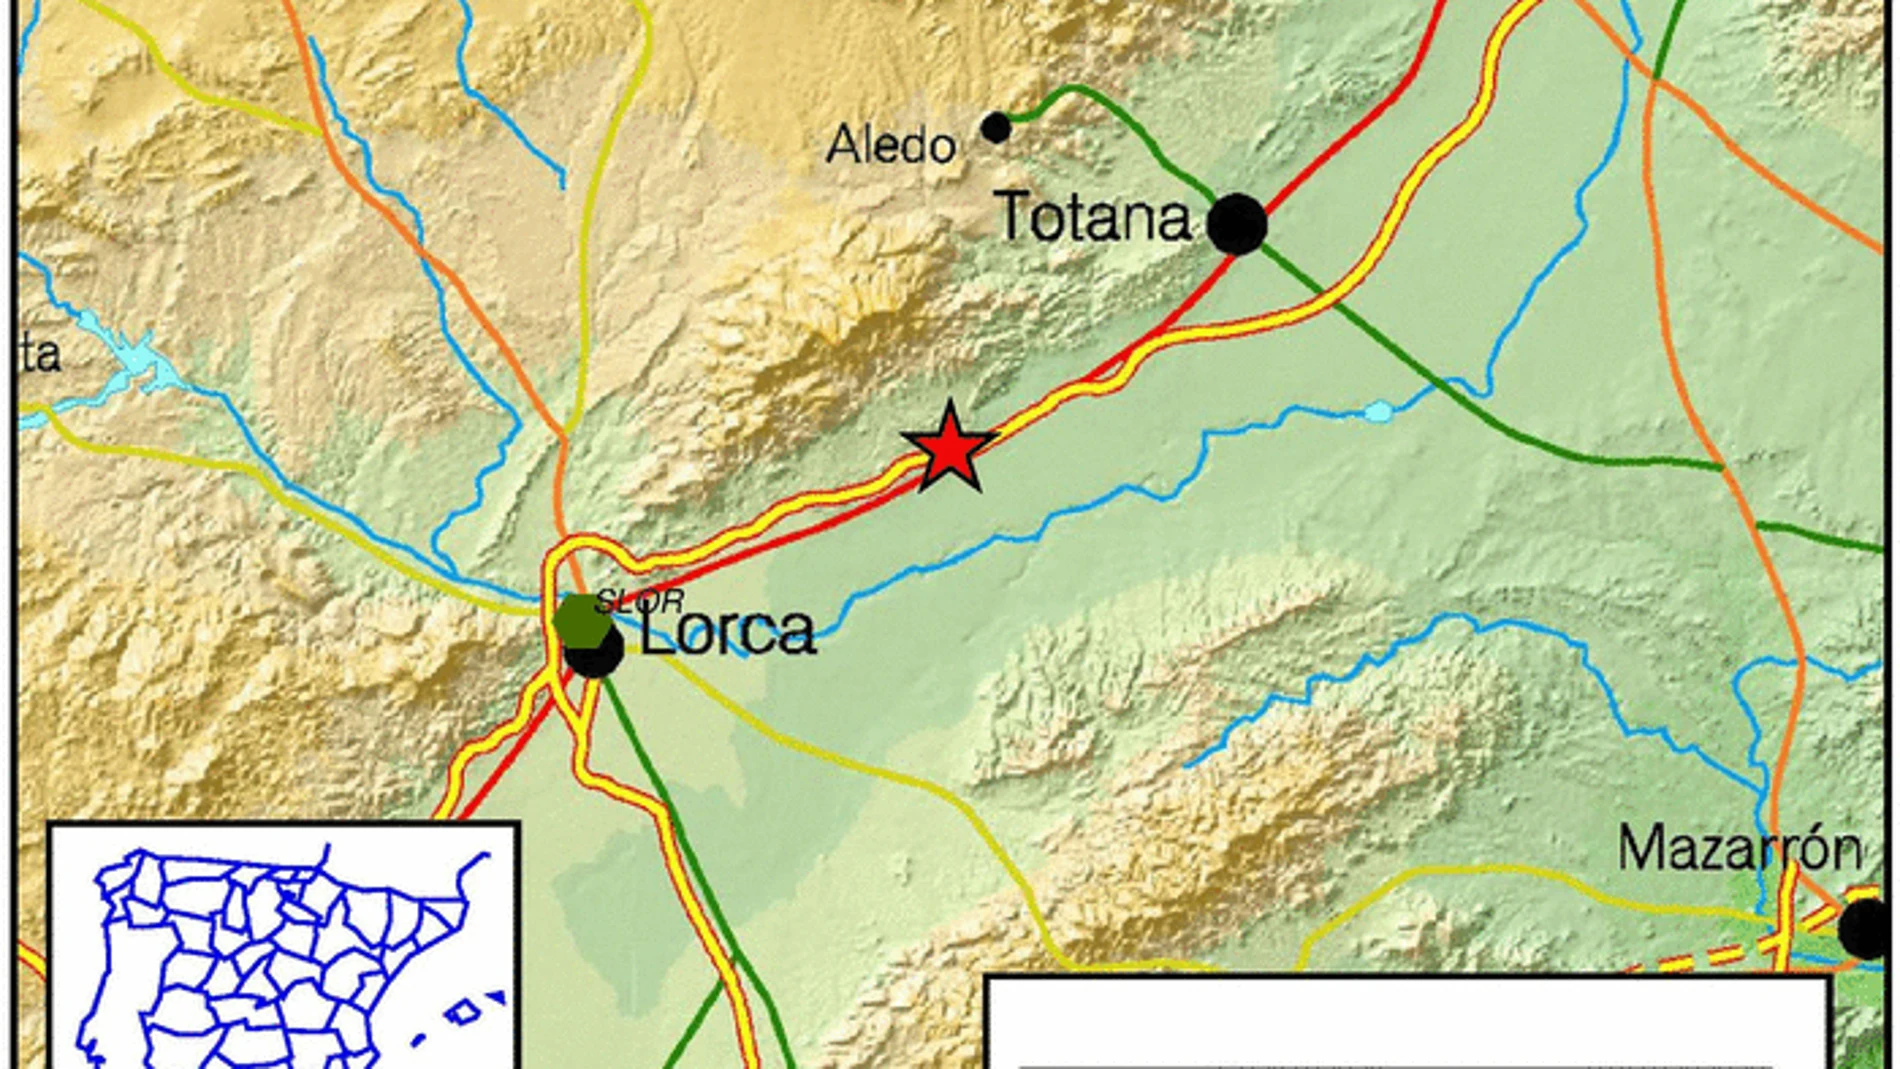 Un temblor de 3,7 grados alerta a los vecinos de Lorca, aunque no constan daños